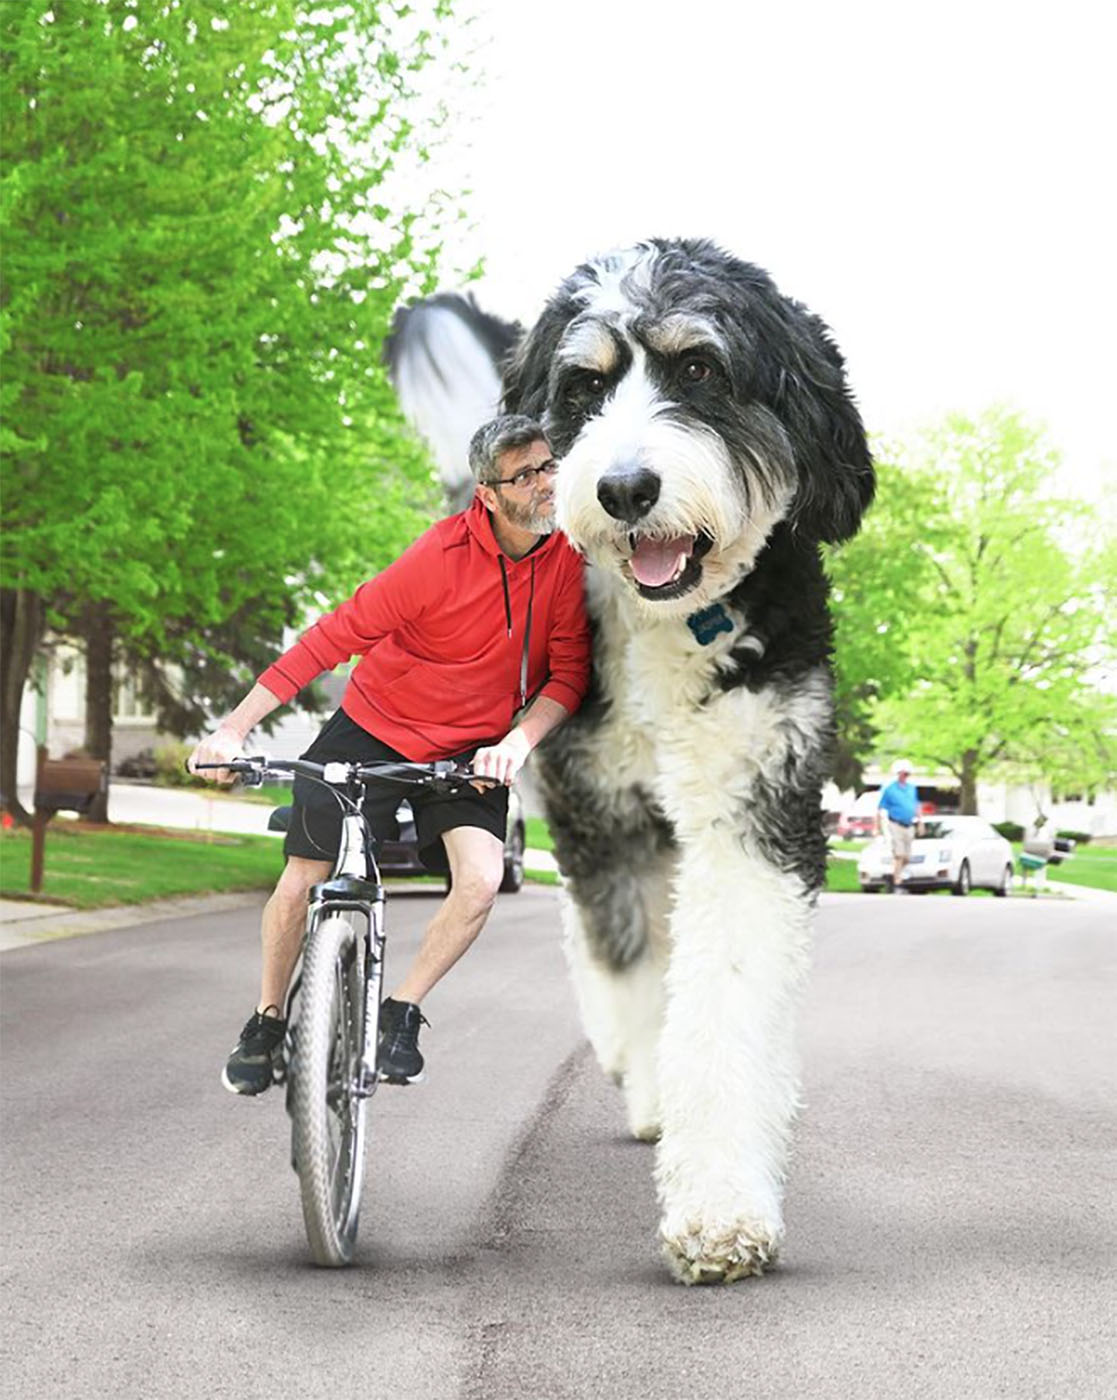 Christopher Cline passeando de bicicleta com seu amigo peludo gigante